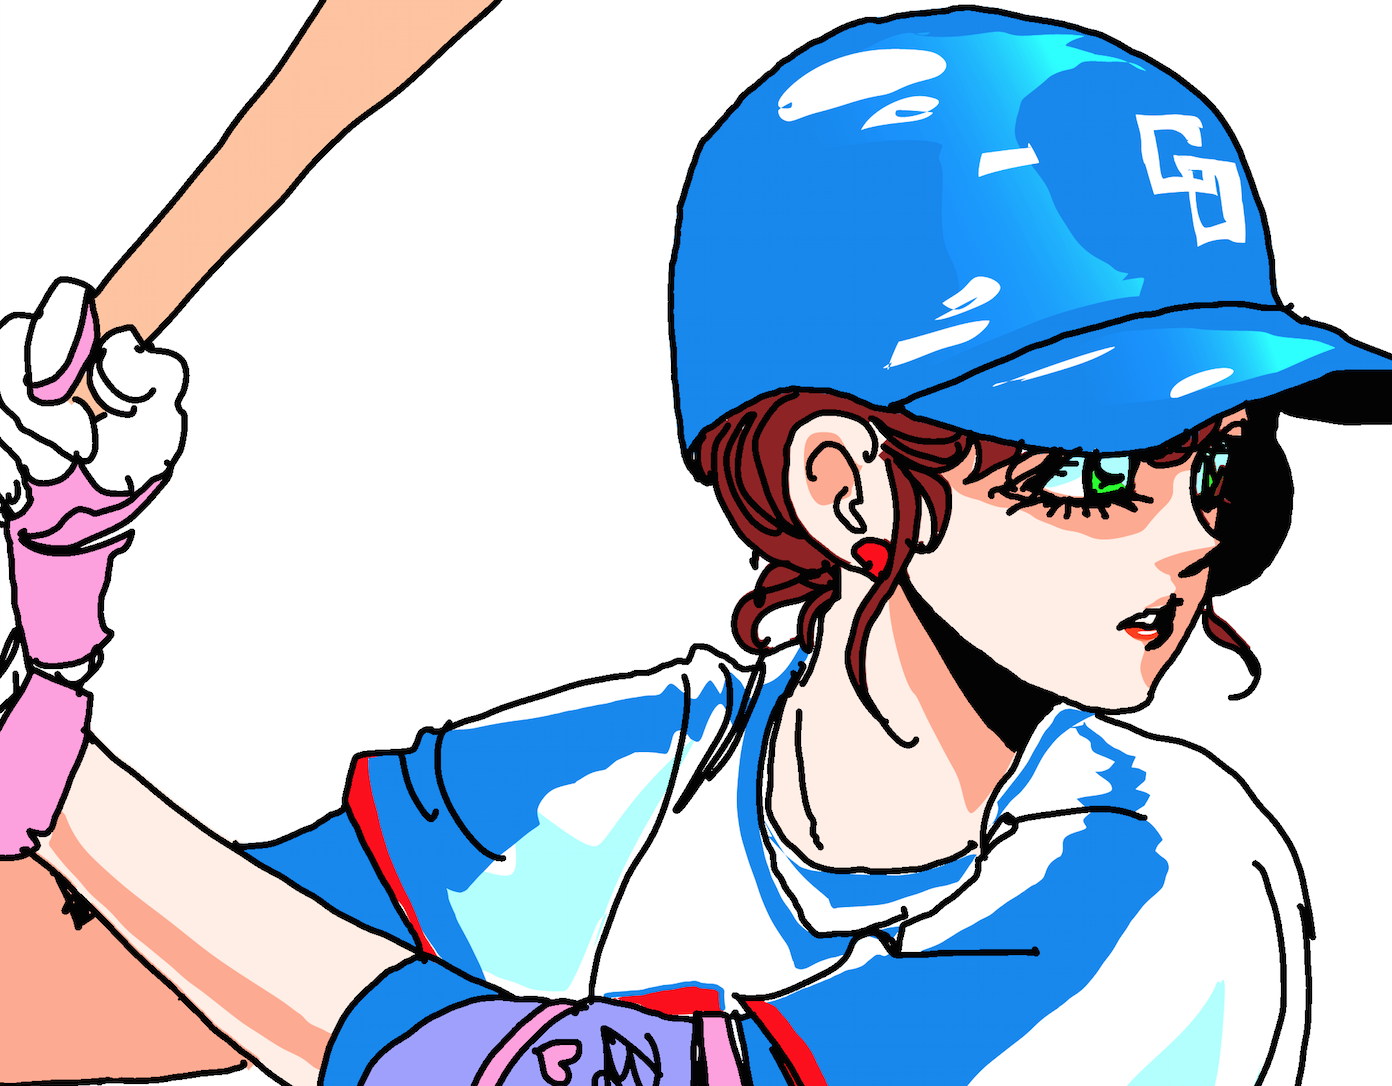 カワイイ野球女子は好きですか 曽田正人の描き下ろしイラスト公開 曽田正人公式サイト